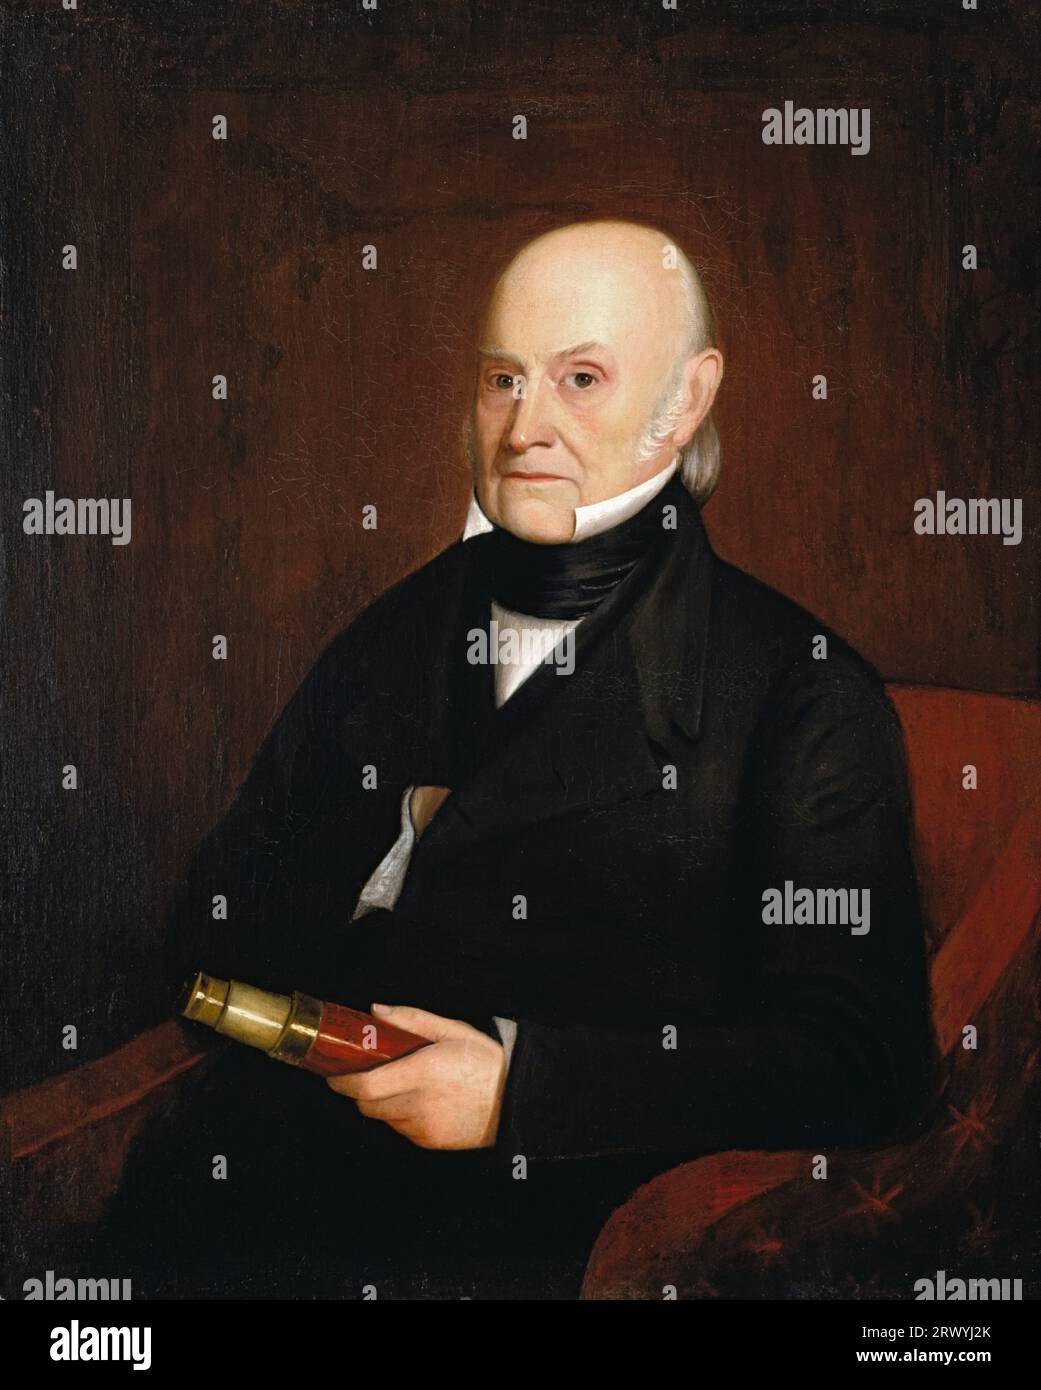 John Quincy Adams (1767 – 1848) statista americano, politico e sesto presidente degli Stati Uniti, dal 1825 al 1829. Ritratto di Quincy Adams per William Hudson, 1844 Foto Stock